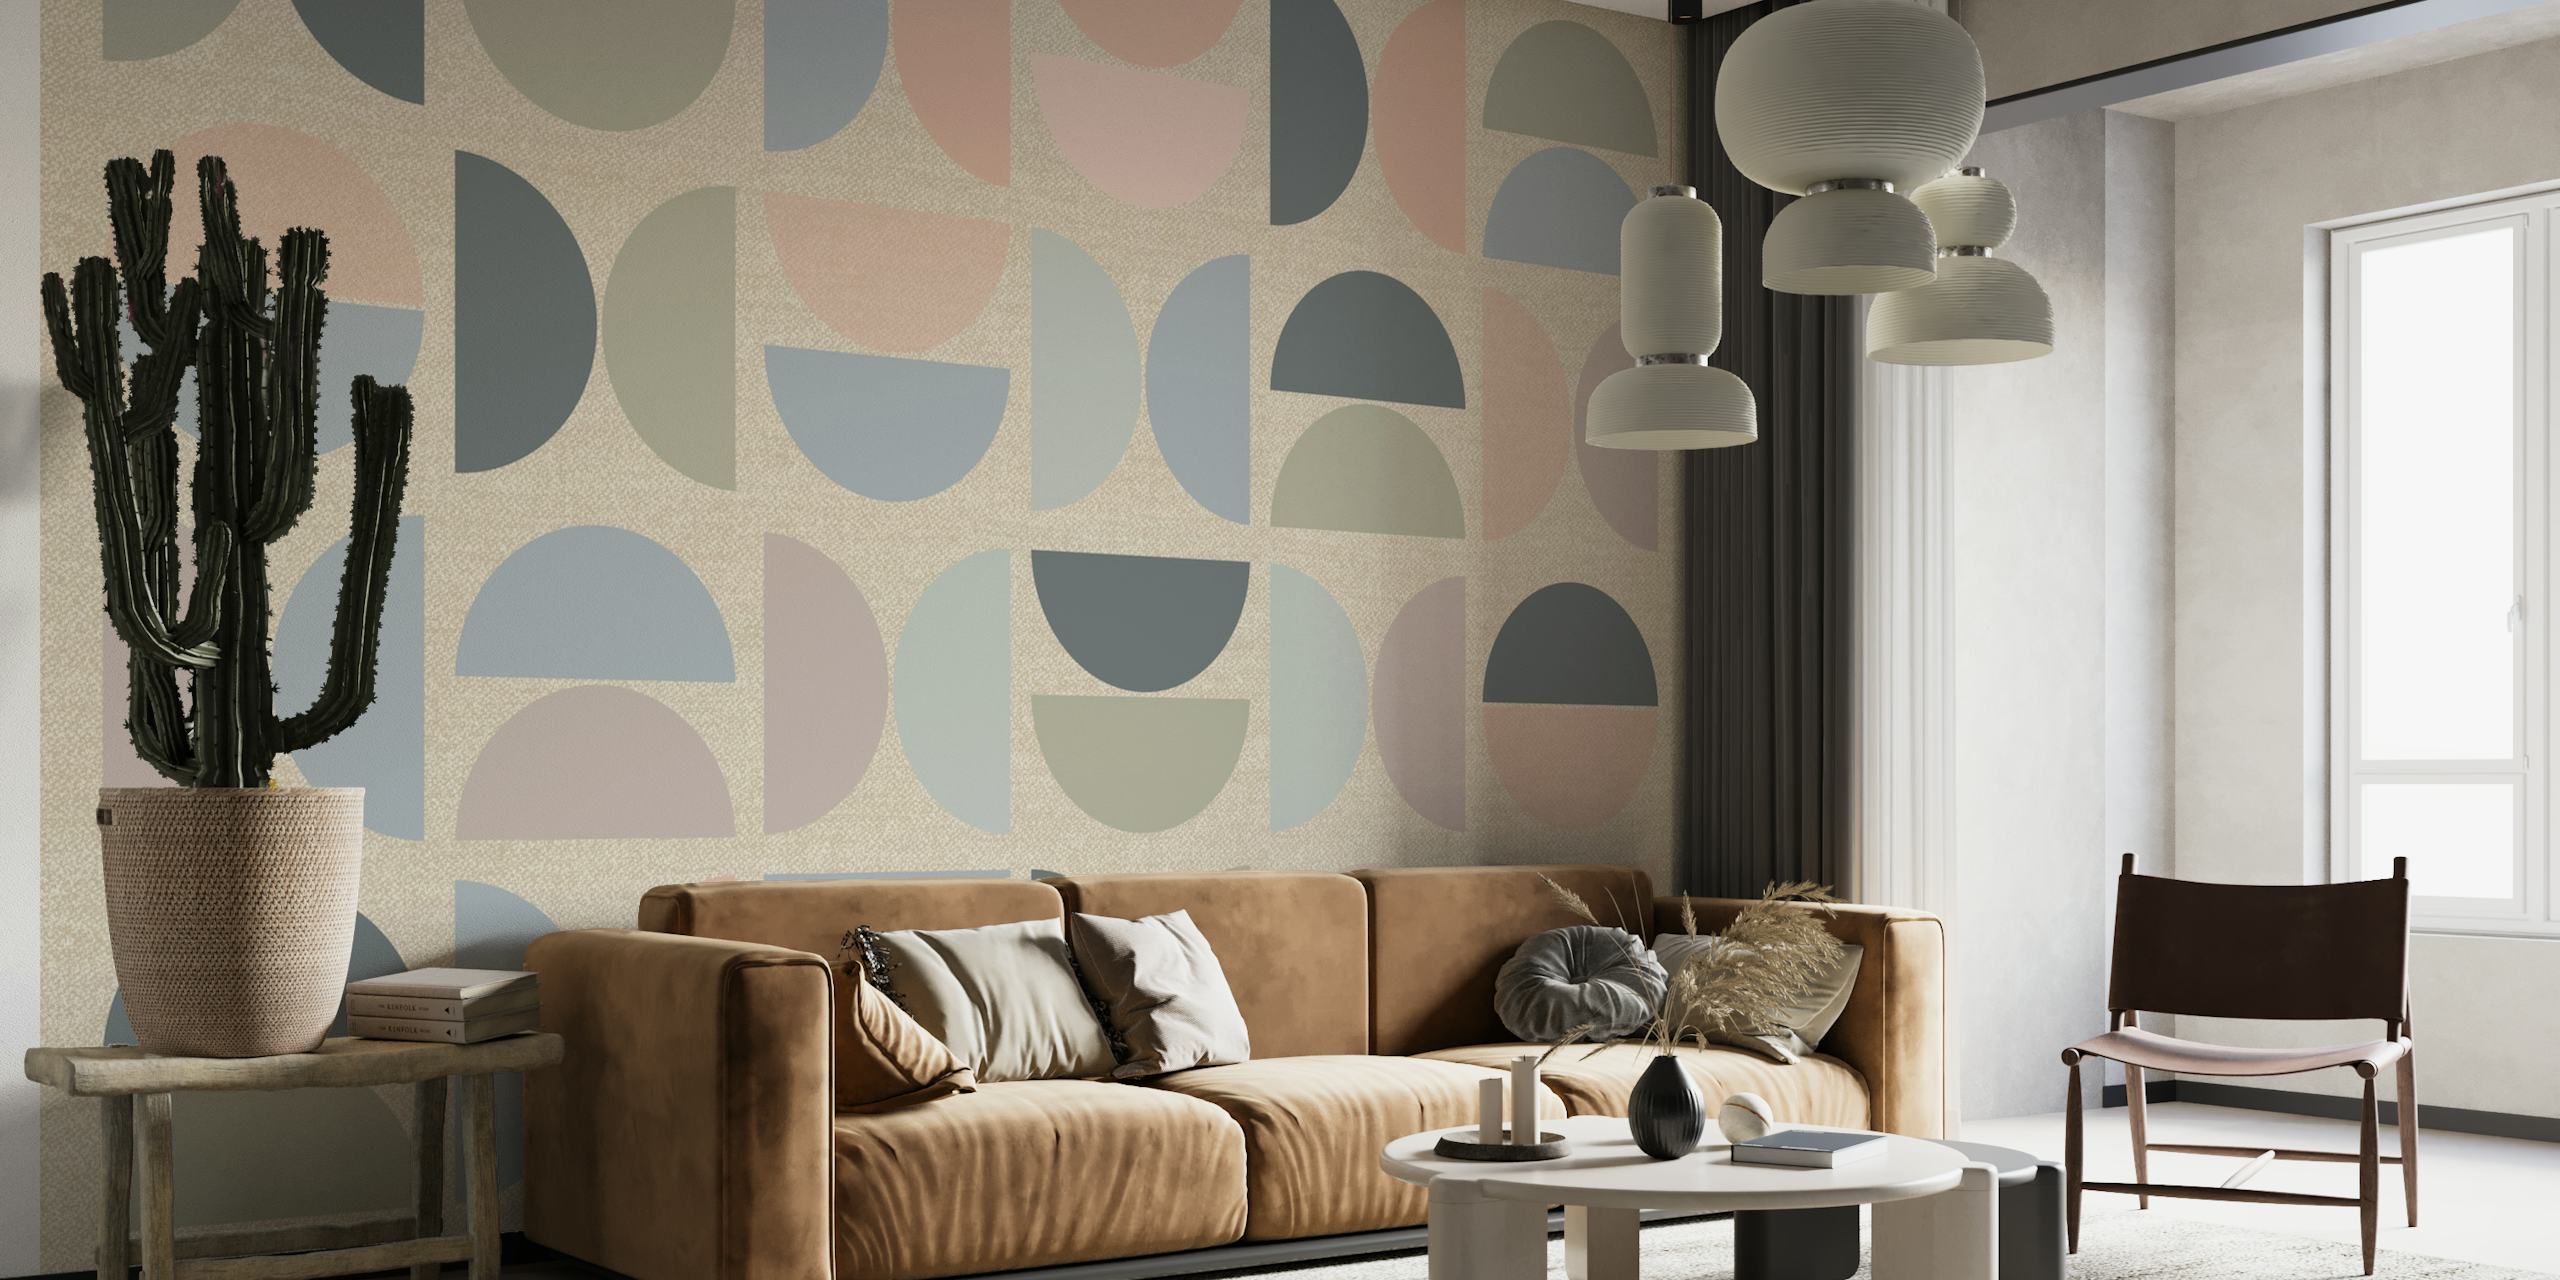 Mural de pared de estilo Bauhaus en tonos pastel apagados con formas geométricas en colores suaves